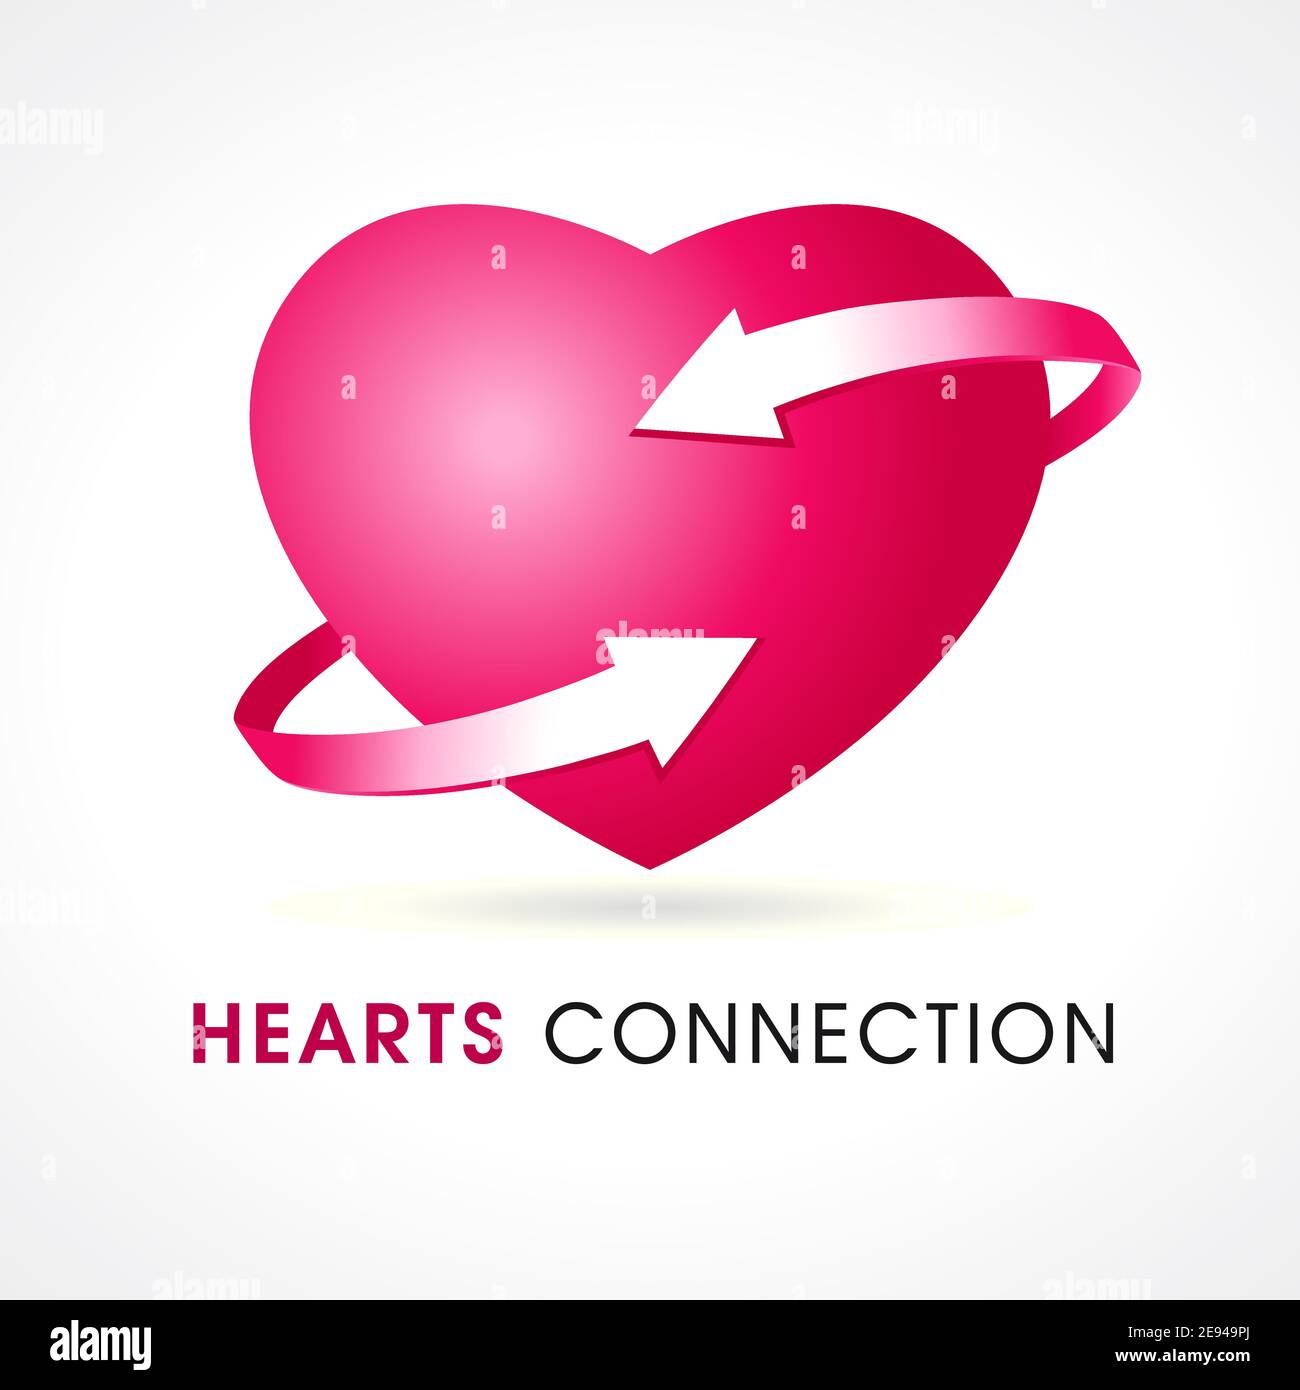 Hearts Connection-Logo. Corporate Branding Identität Idee für Internet-Dating-Website, Harmonie in Beziehungen, Kommunikation, psychologische Hilfe Stock Vektor